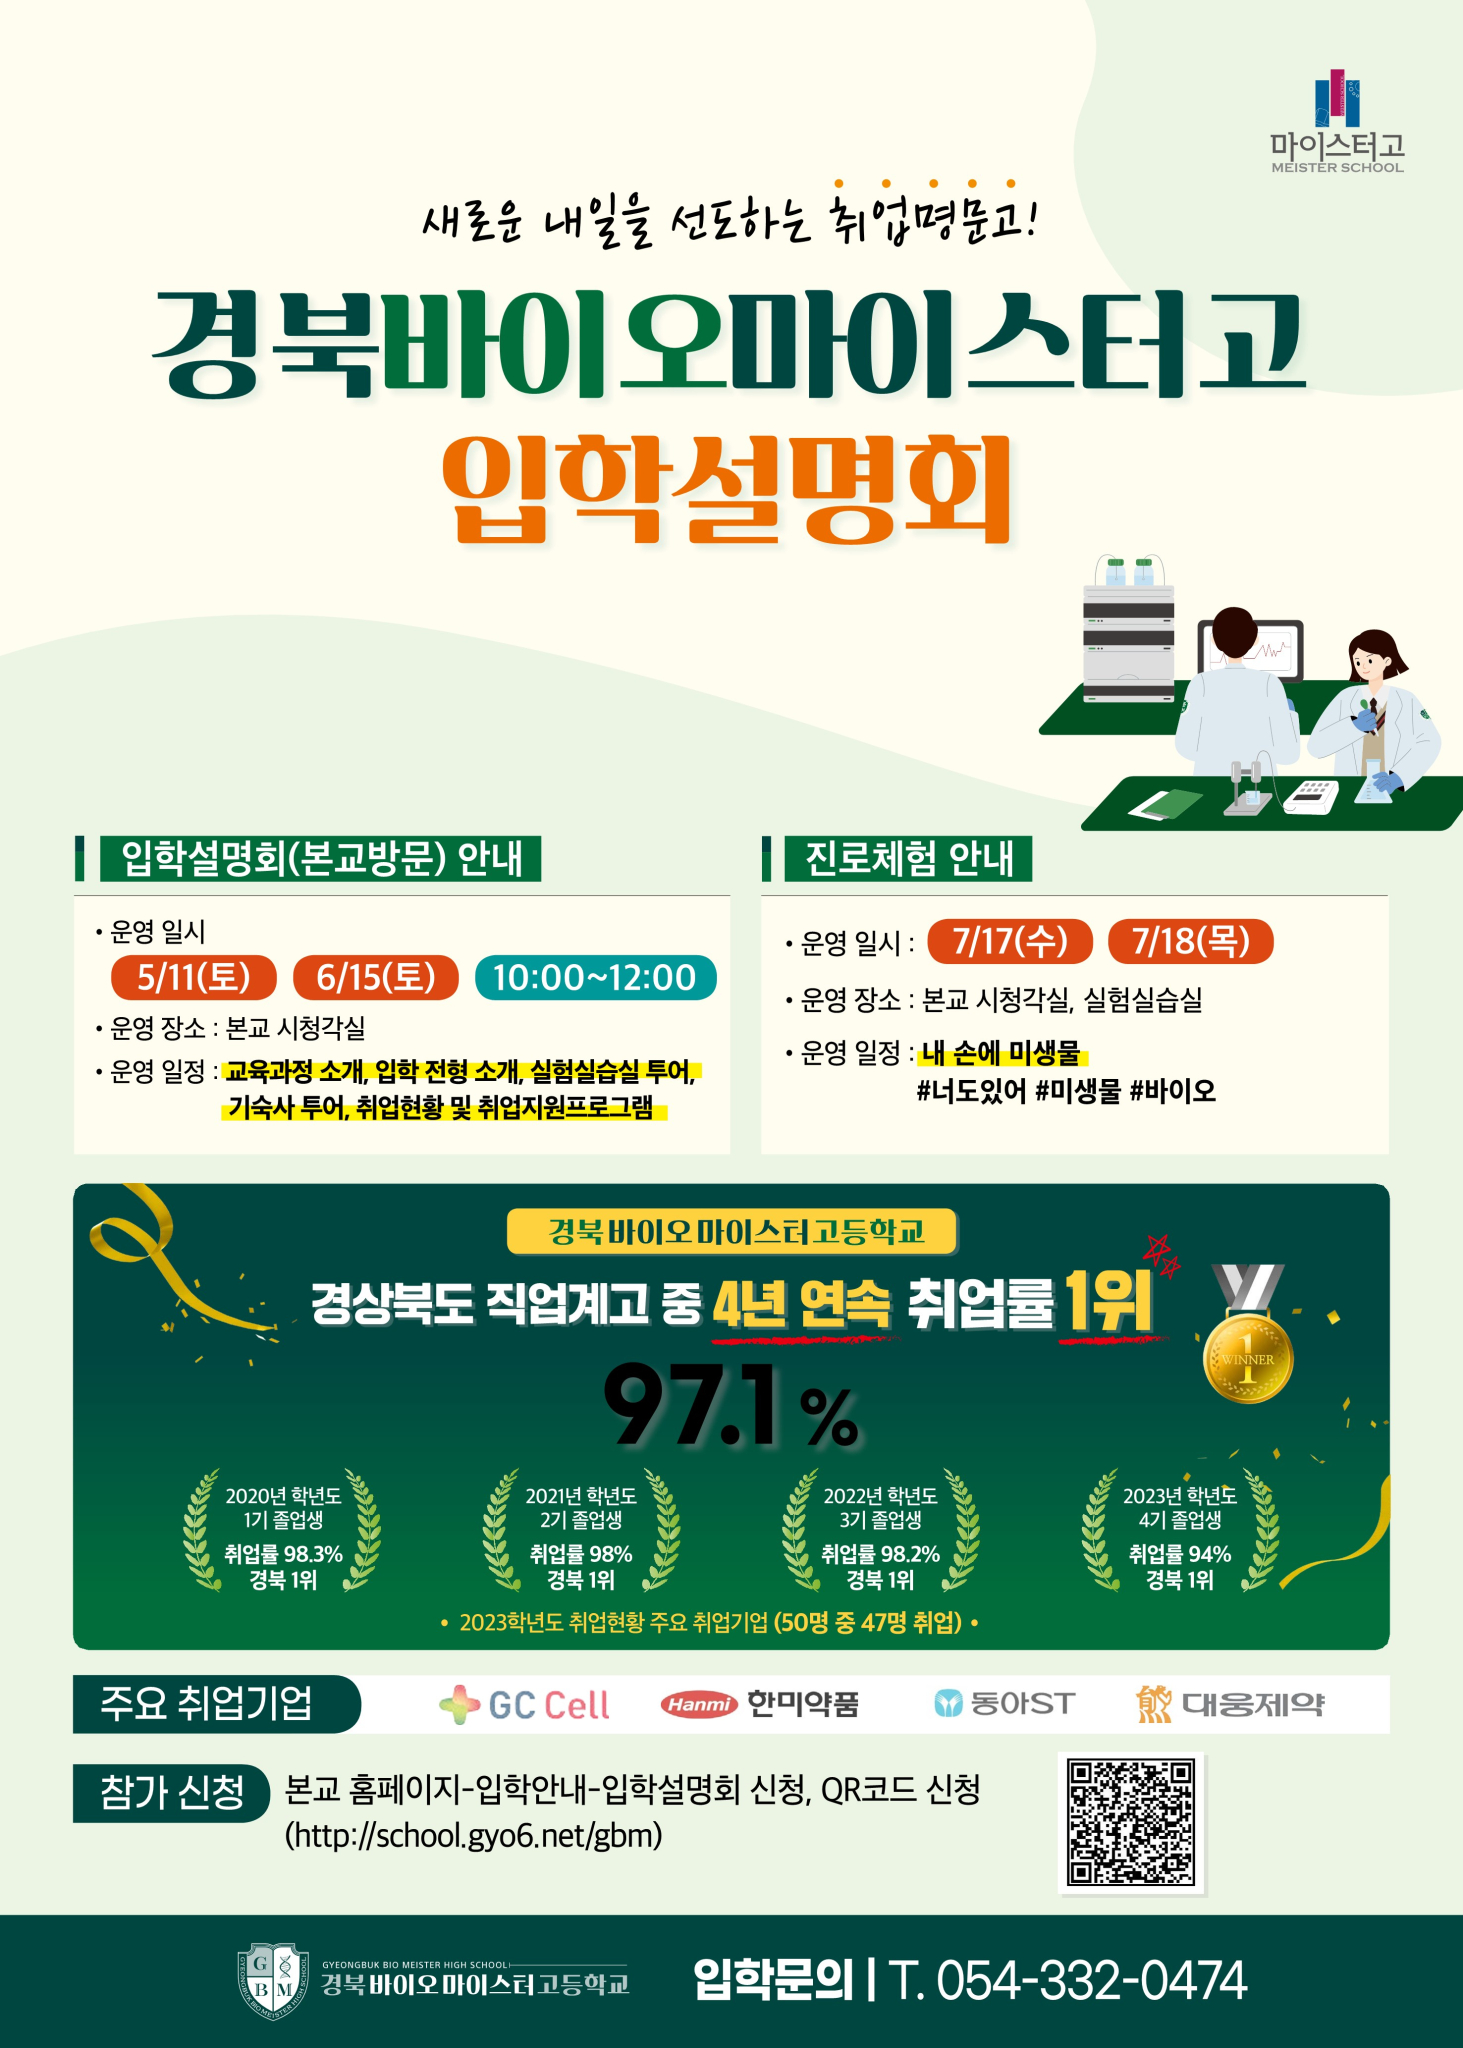 사본 -경북바이오마이스터고등학교 입학설명회 안내문(학급게시용)